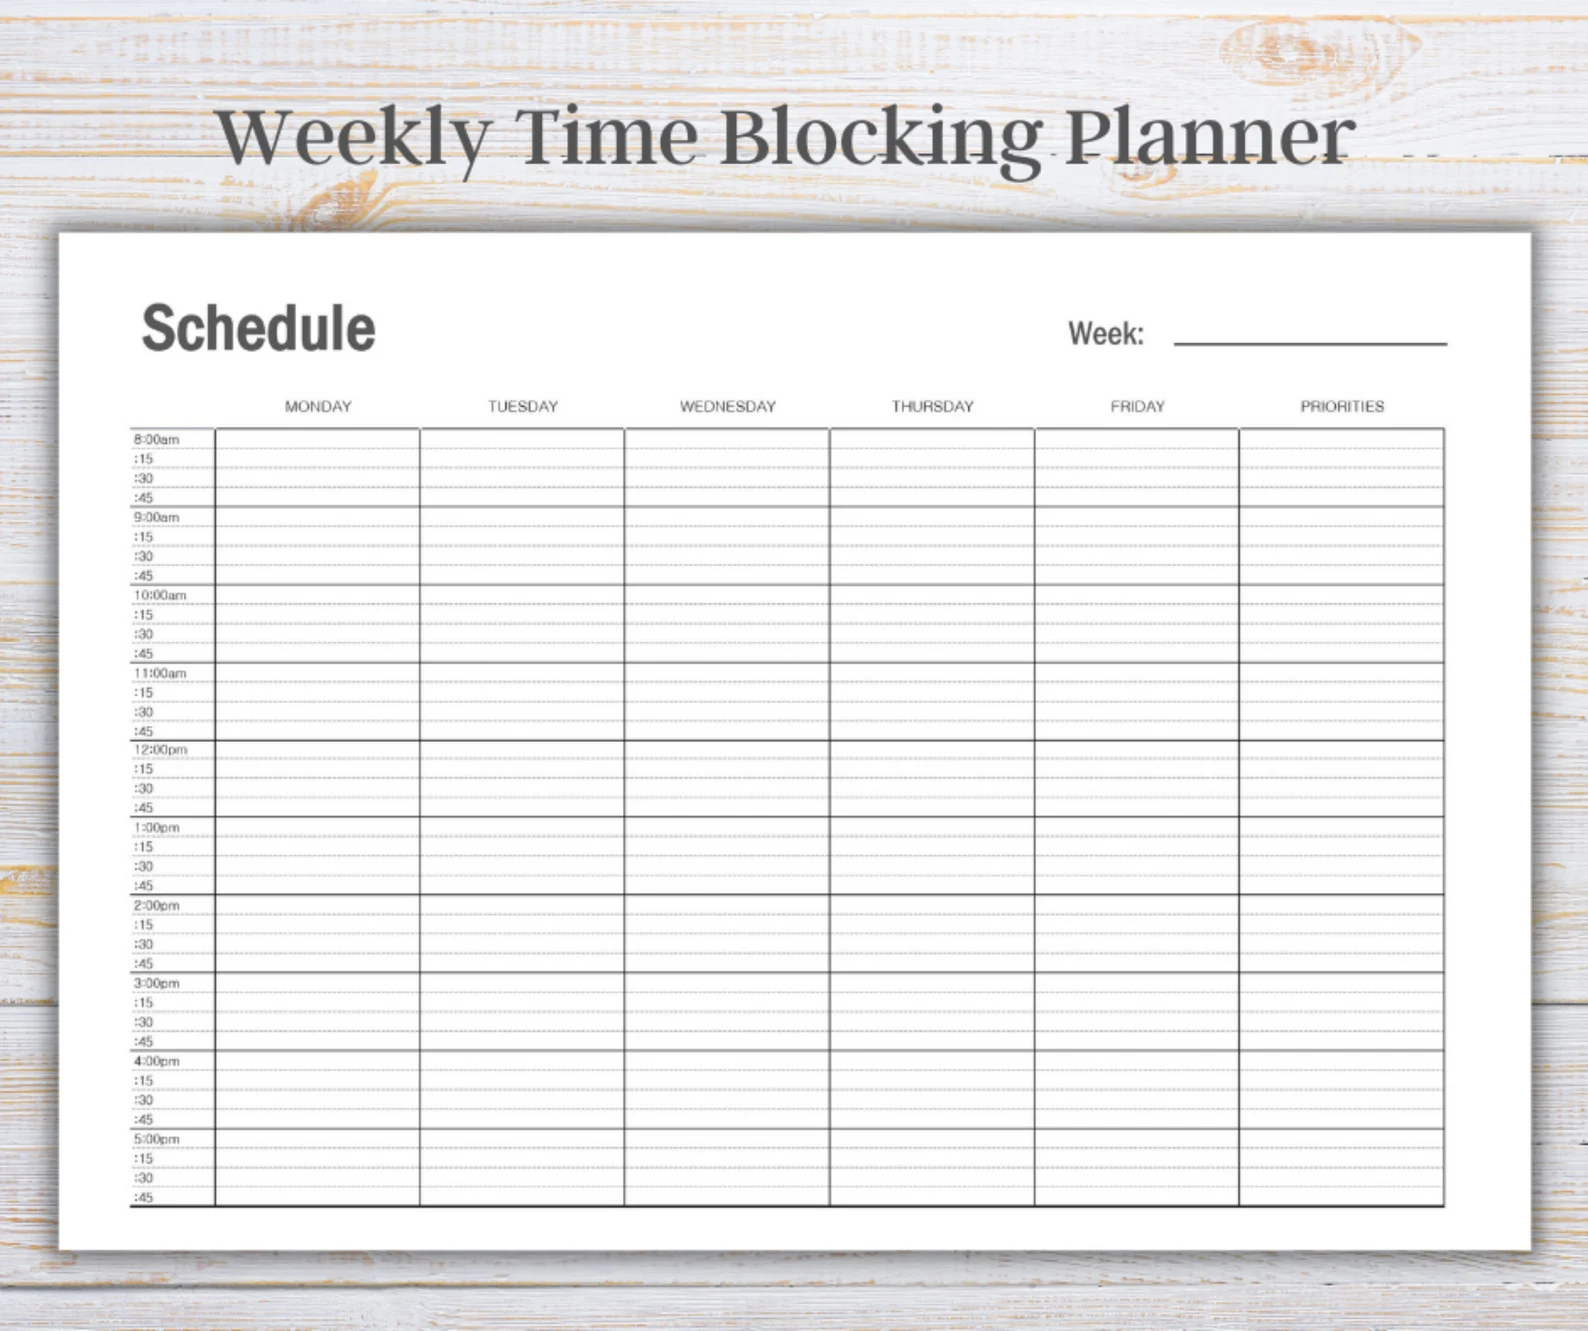 time blocking planner